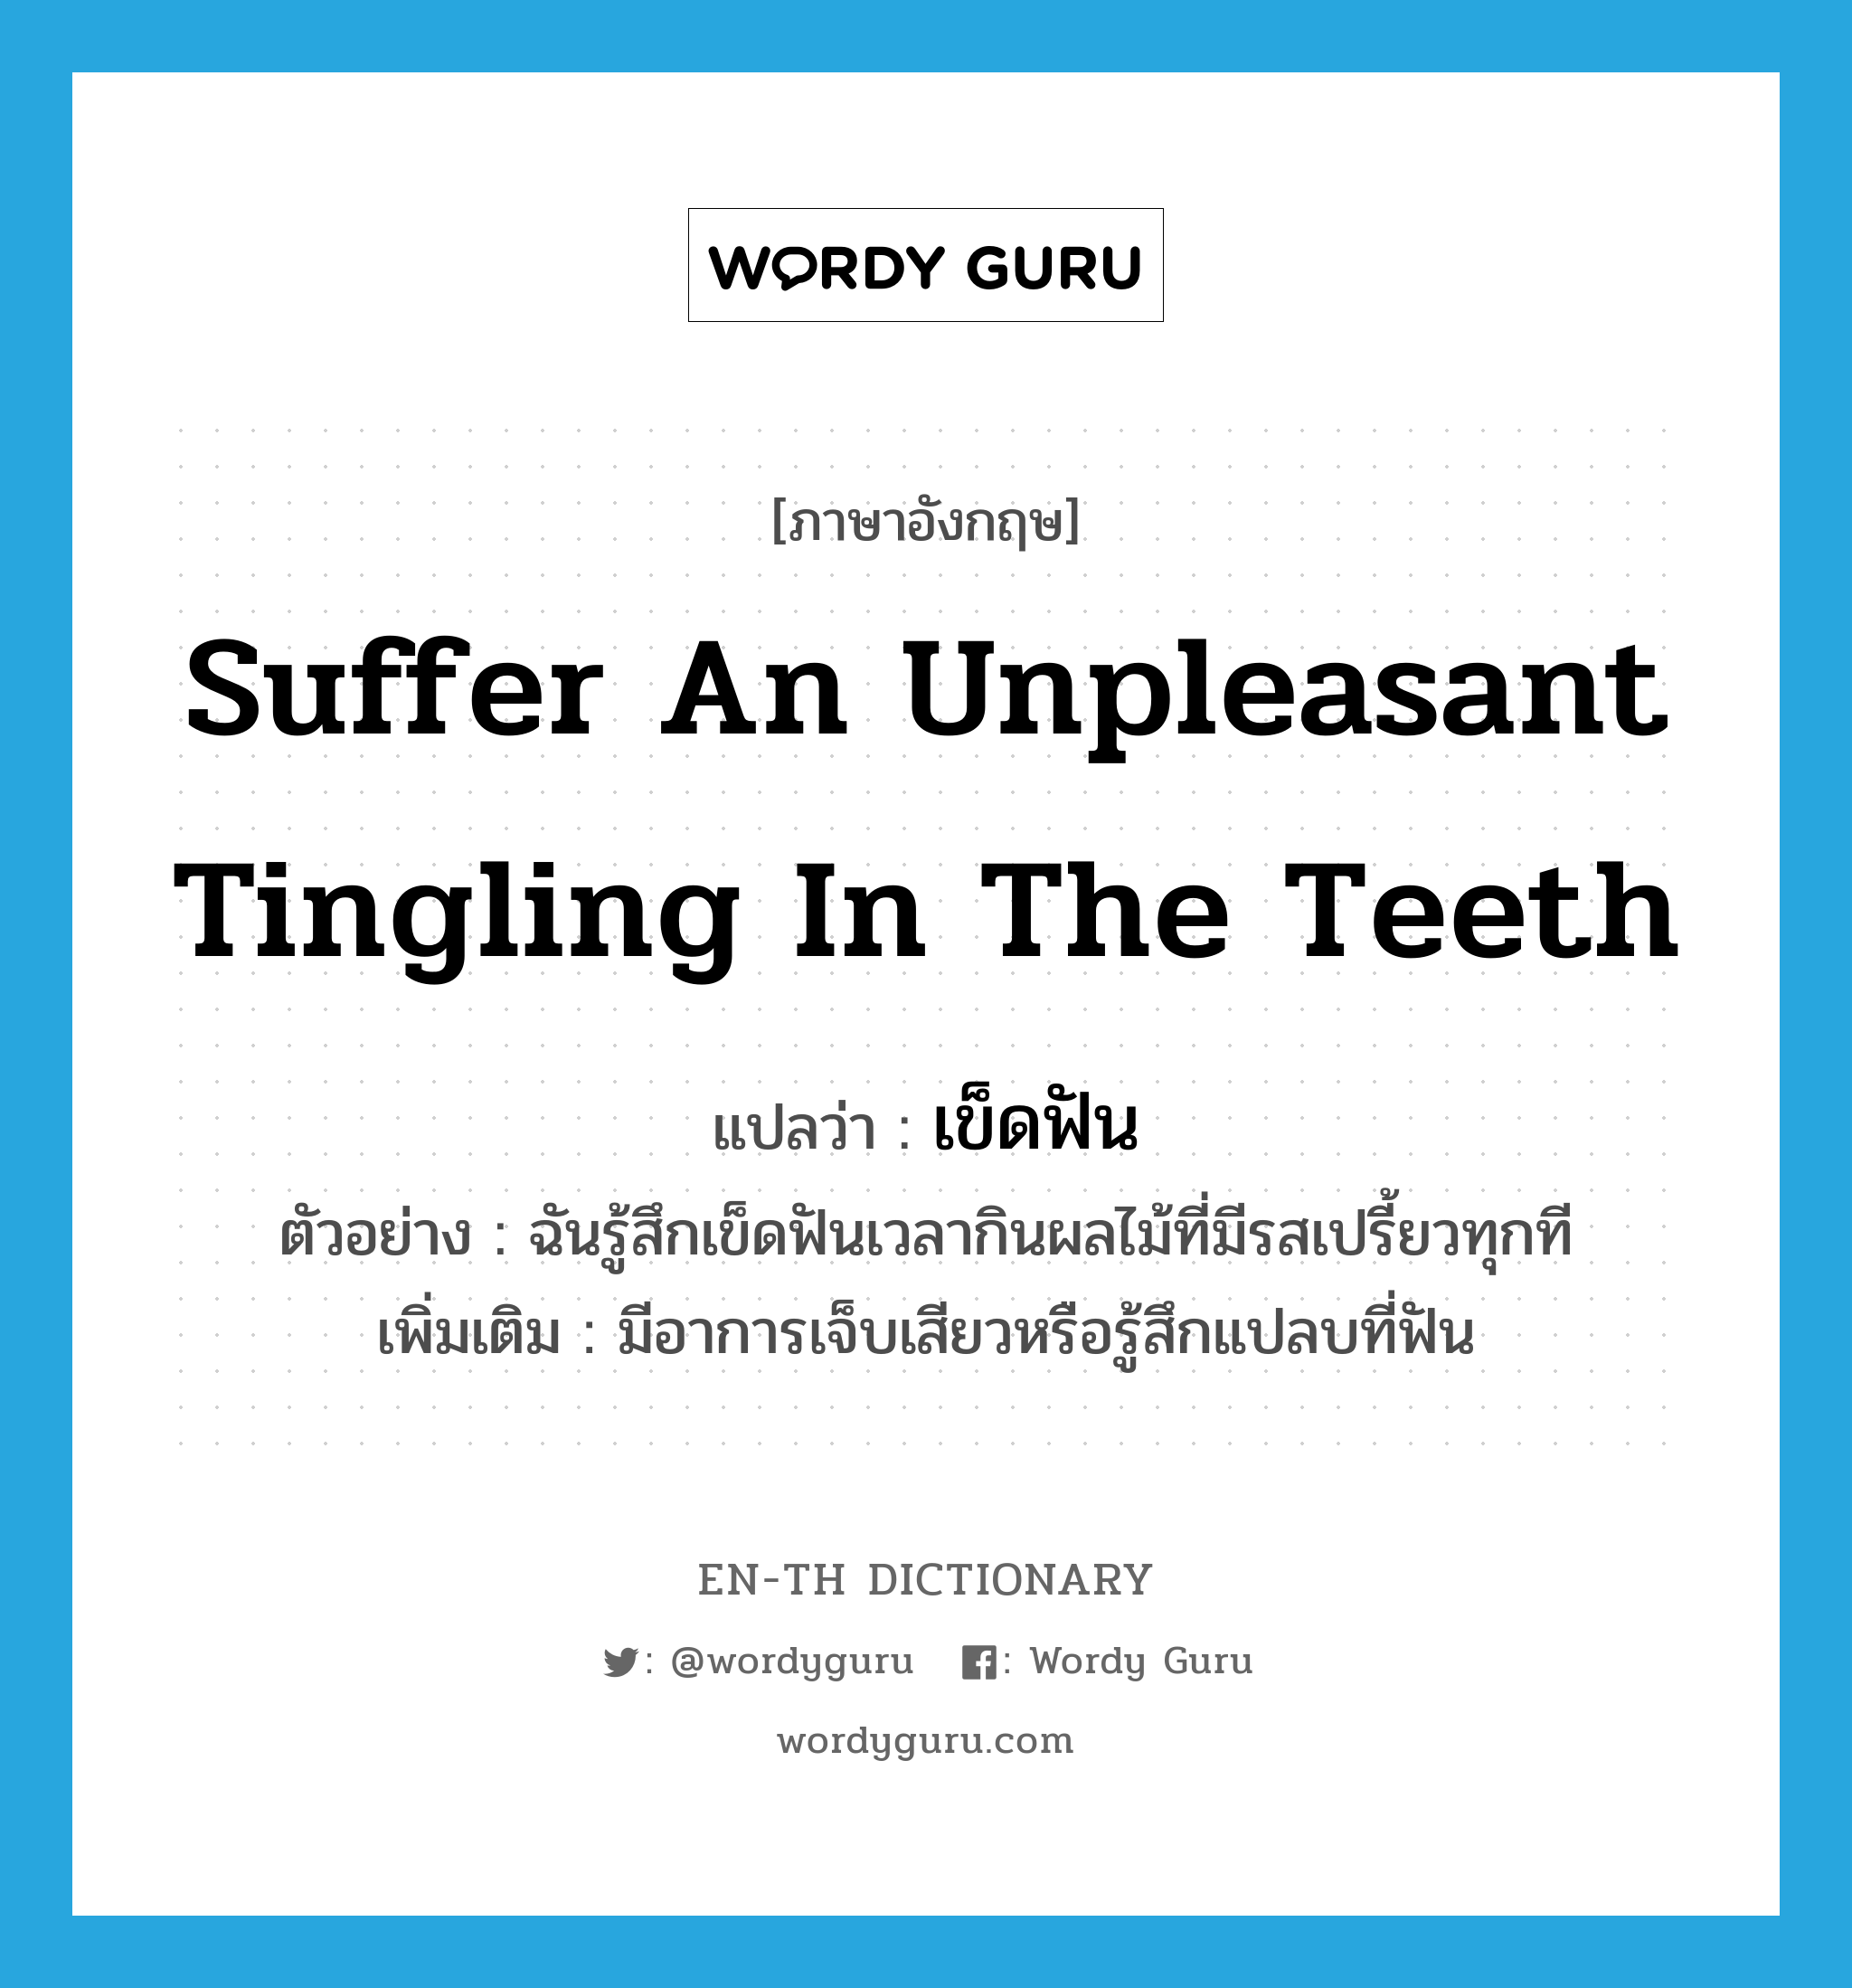 suffer an unpleasant tingling in the teeth แปลว่า?, คำศัพท์ภาษาอังกฤษ suffer an unpleasant tingling in the teeth แปลว่า เข็ดฟัน ประเภท V ตัวอย่าง ฉันรู้สึกเข็ดฟันเวลากินผลไม้ที่มีรสเปรี้ยวทุกที เพิ่มเติม มีอาการเจ็บเสียวหรือรู้สึกแปลบที่ฟัน หมวด V